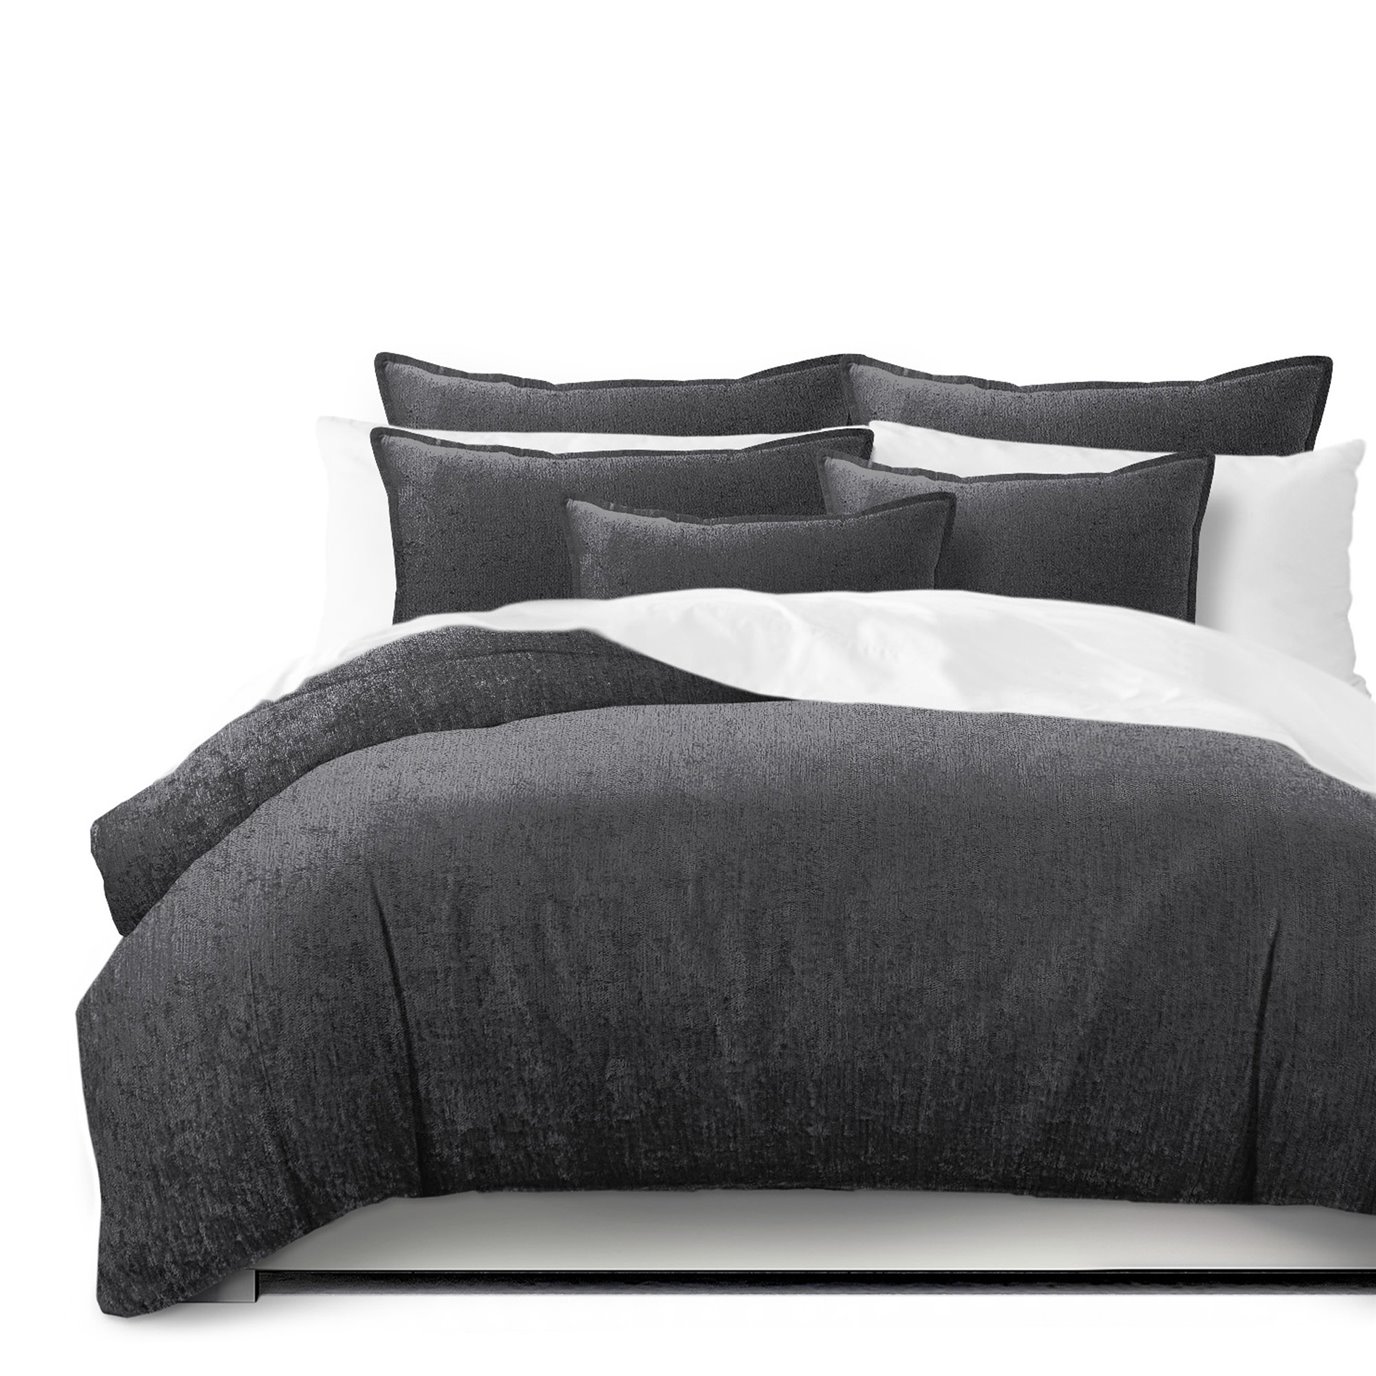 Juno Velvet Gray Coverlet and Pillow Sham(s) Set - Size Full